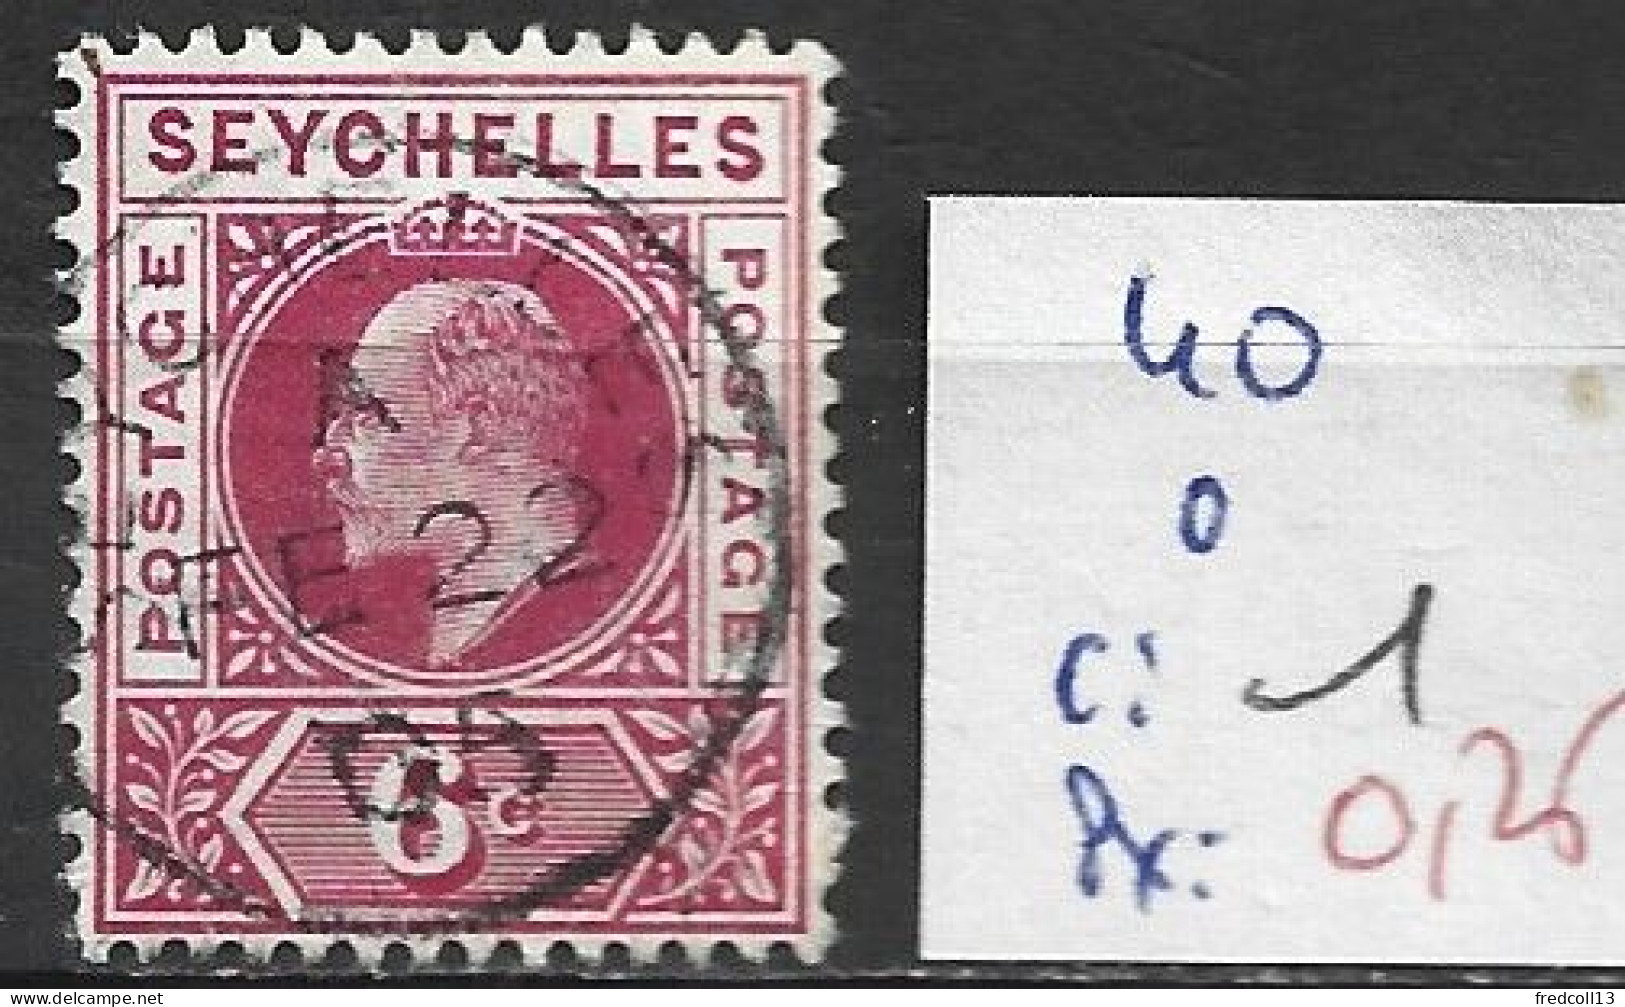 SEYCHELLES 40 Oblitéré Côte 0.20 € - Seychelles (...-1976)